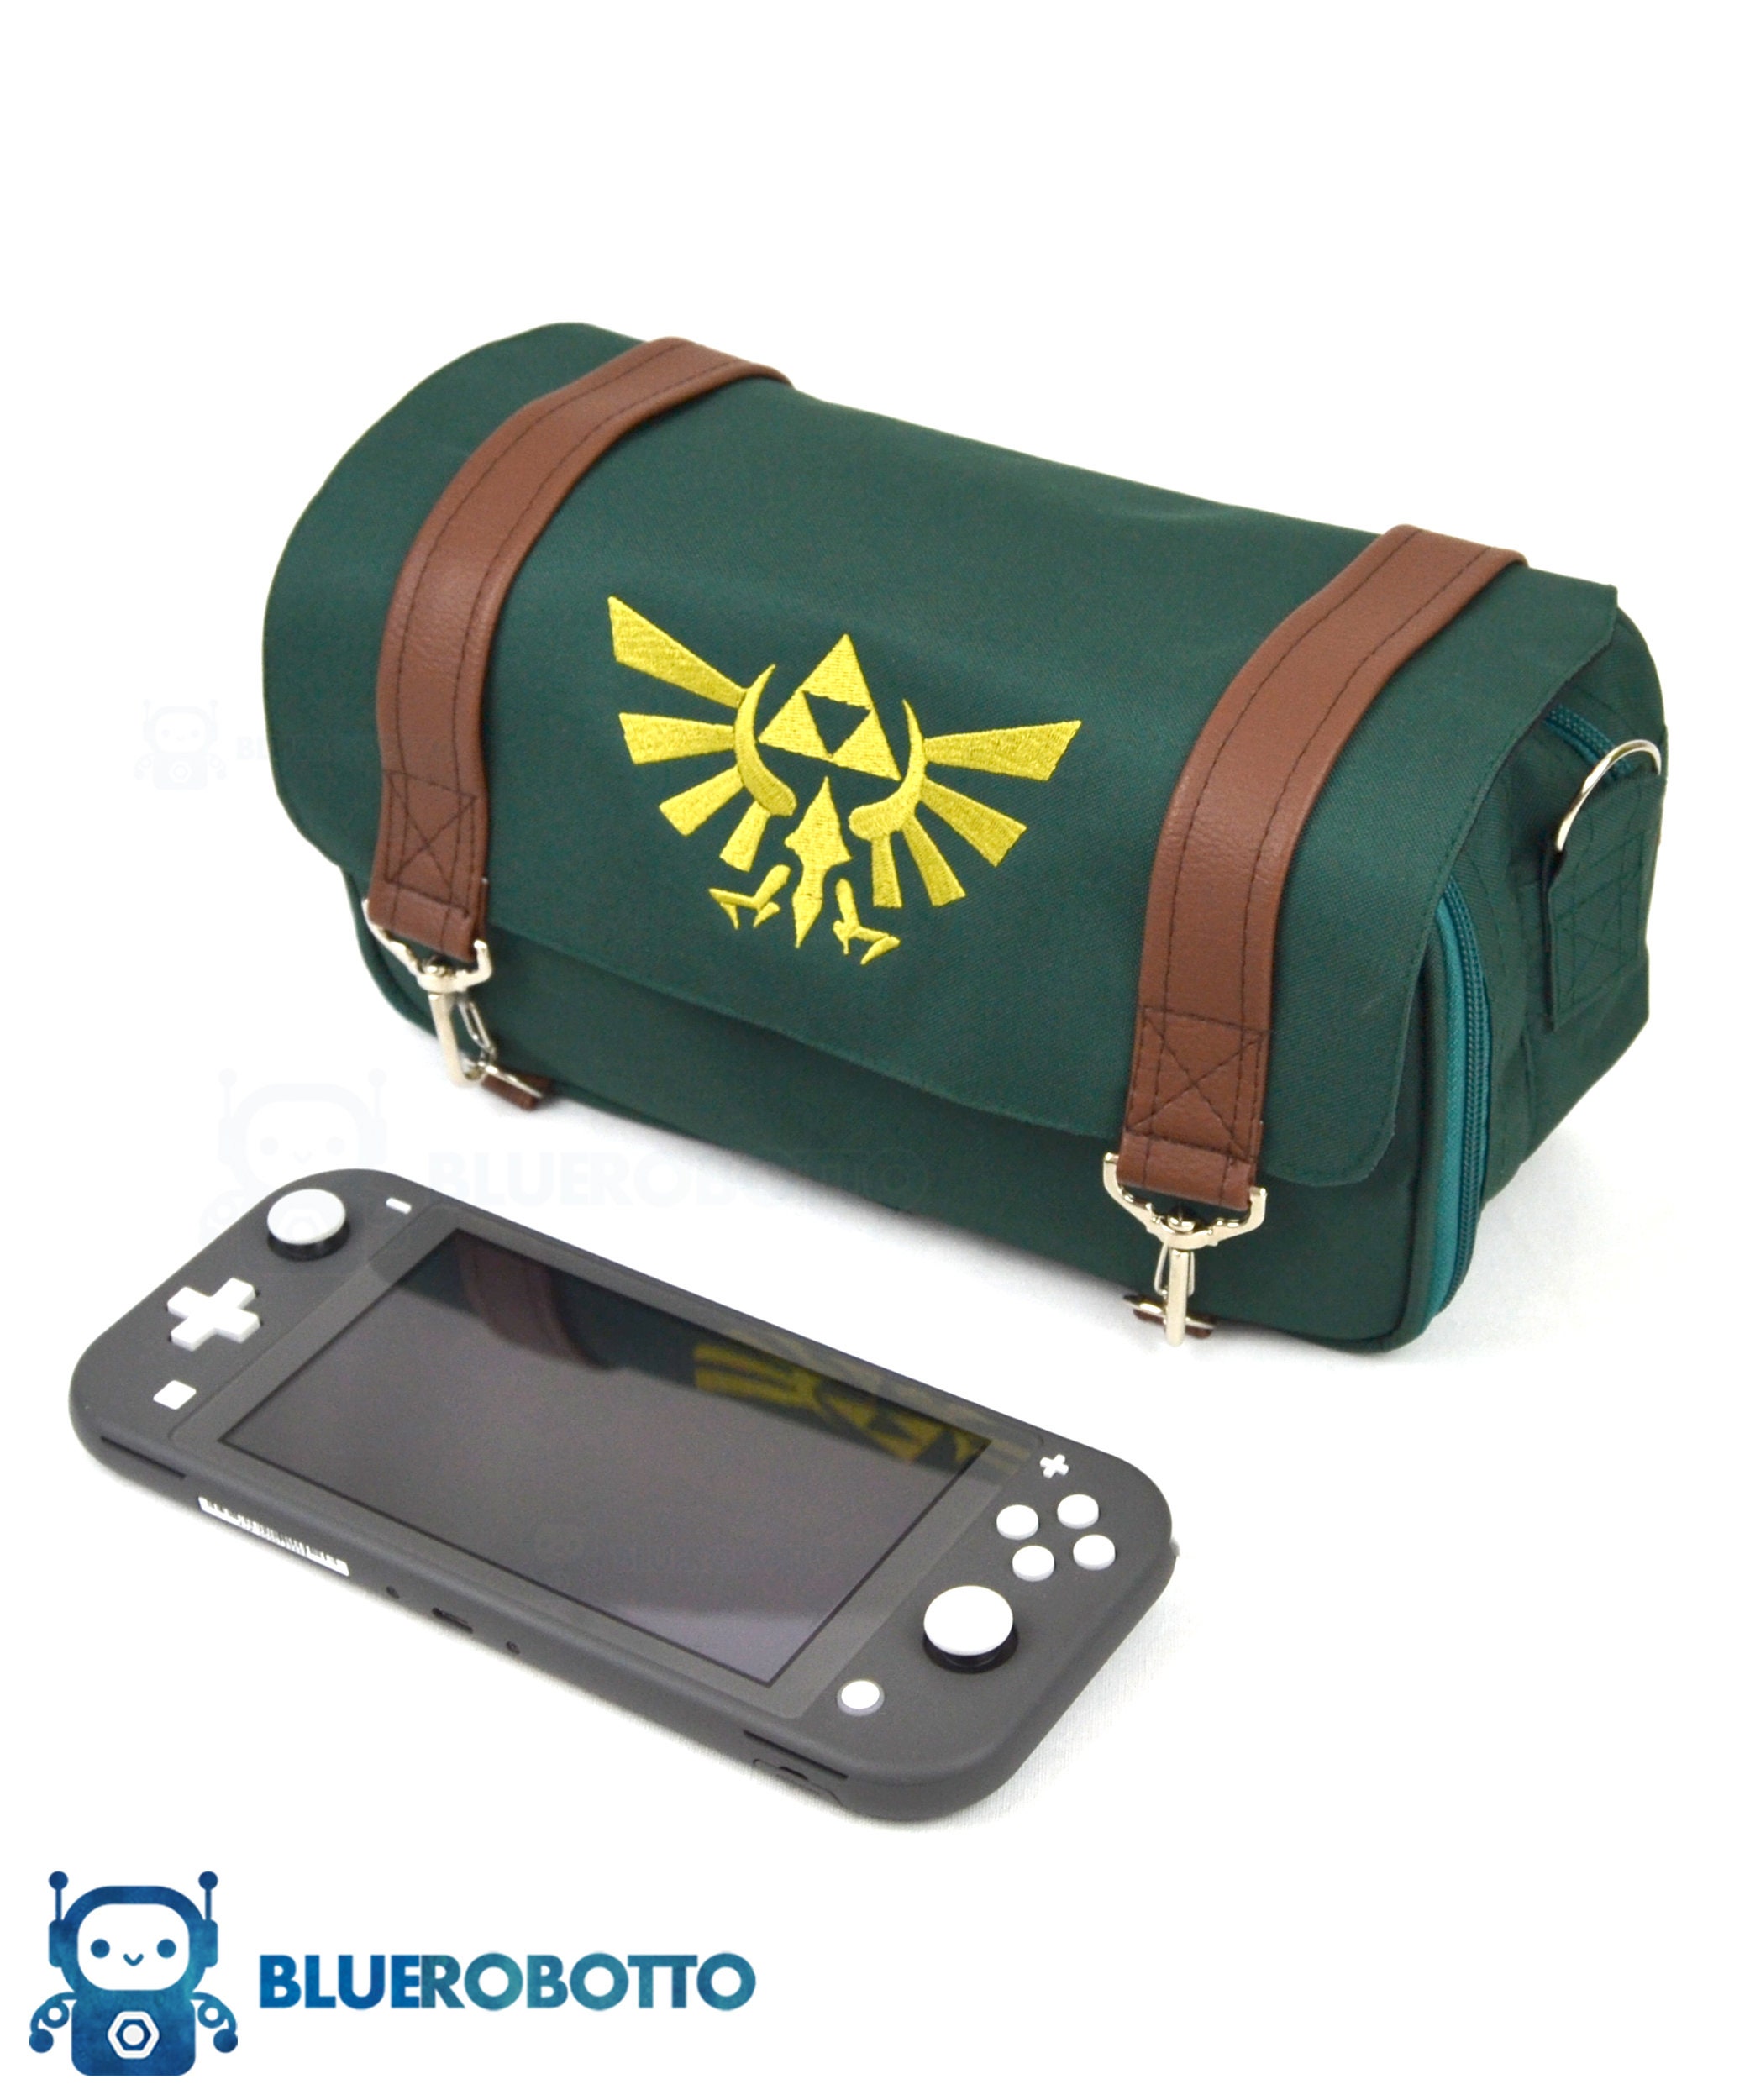 Nintendo Wii Black Blue Carrying Case Travel Messenger Bag Pockets &  Strap